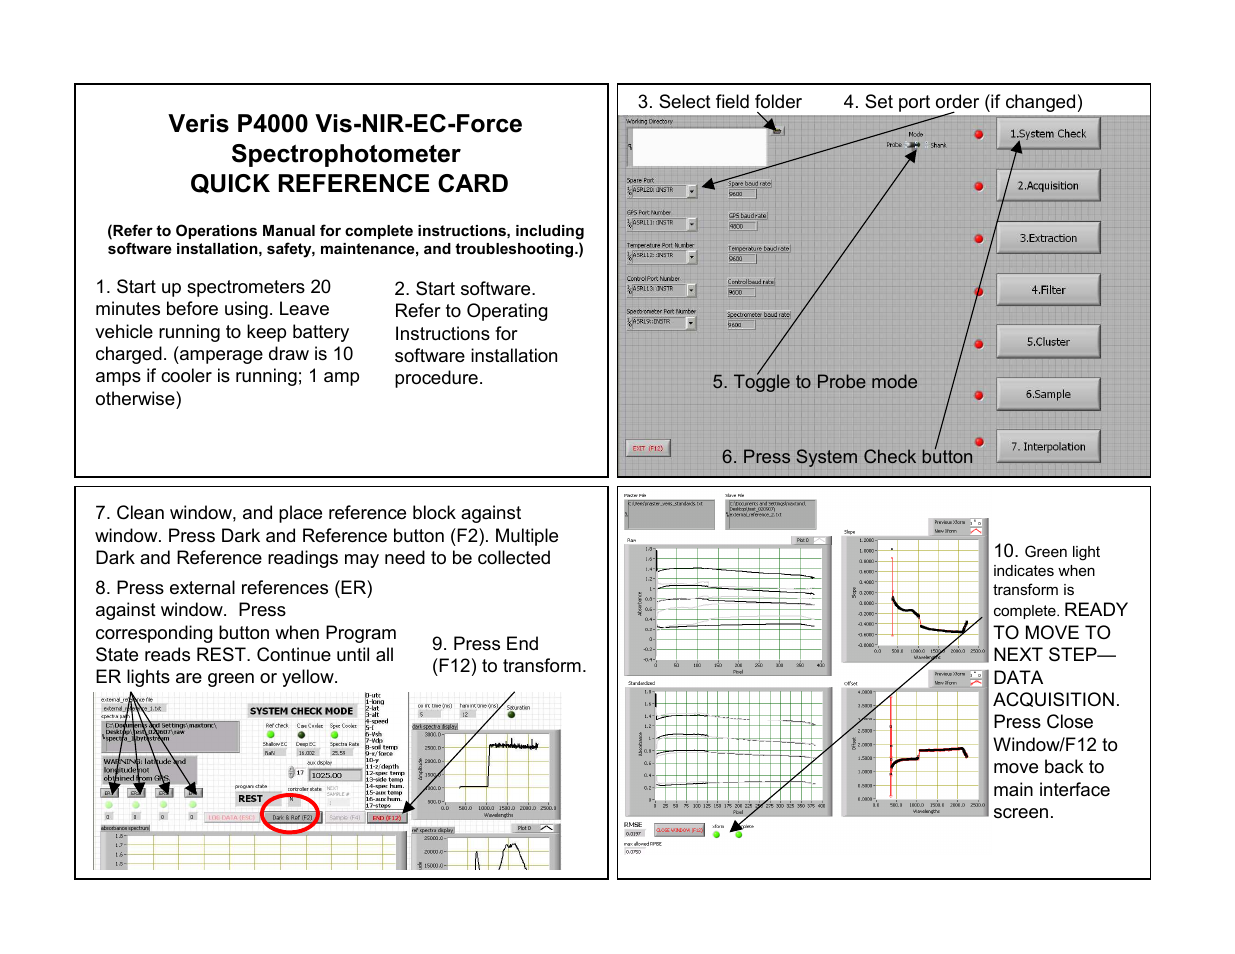 VIS-NIR-EC-Force P4000 Spectrophotometer - QUICK REFERENCE CARD